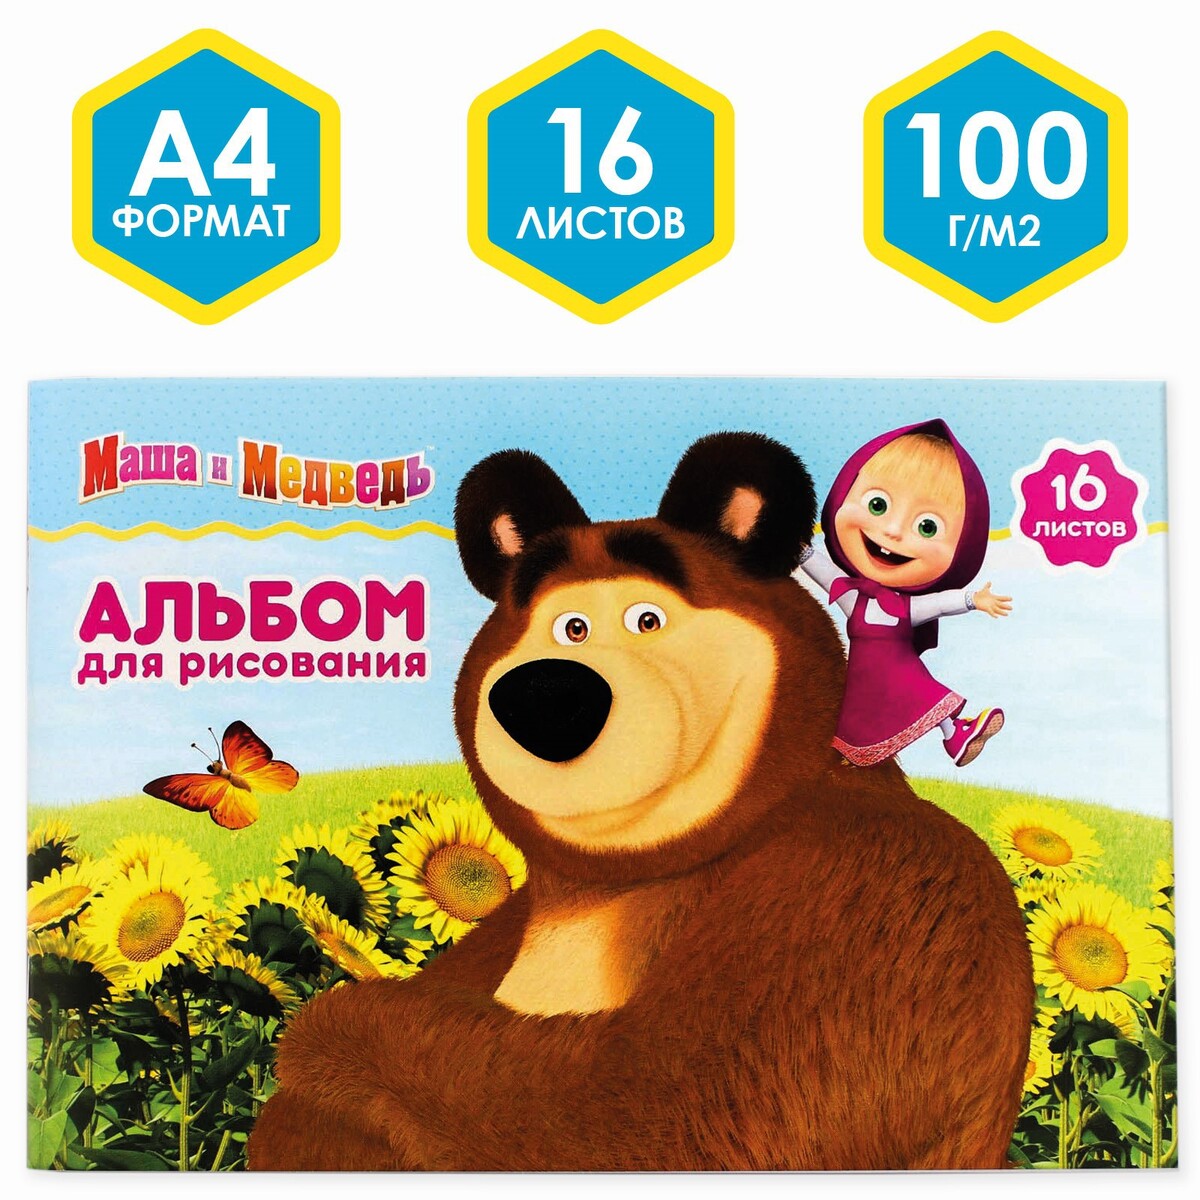 Альбом для рисования а4, 16 листов 100 г/м², на скрепке, маша и медведь Маша и медведь